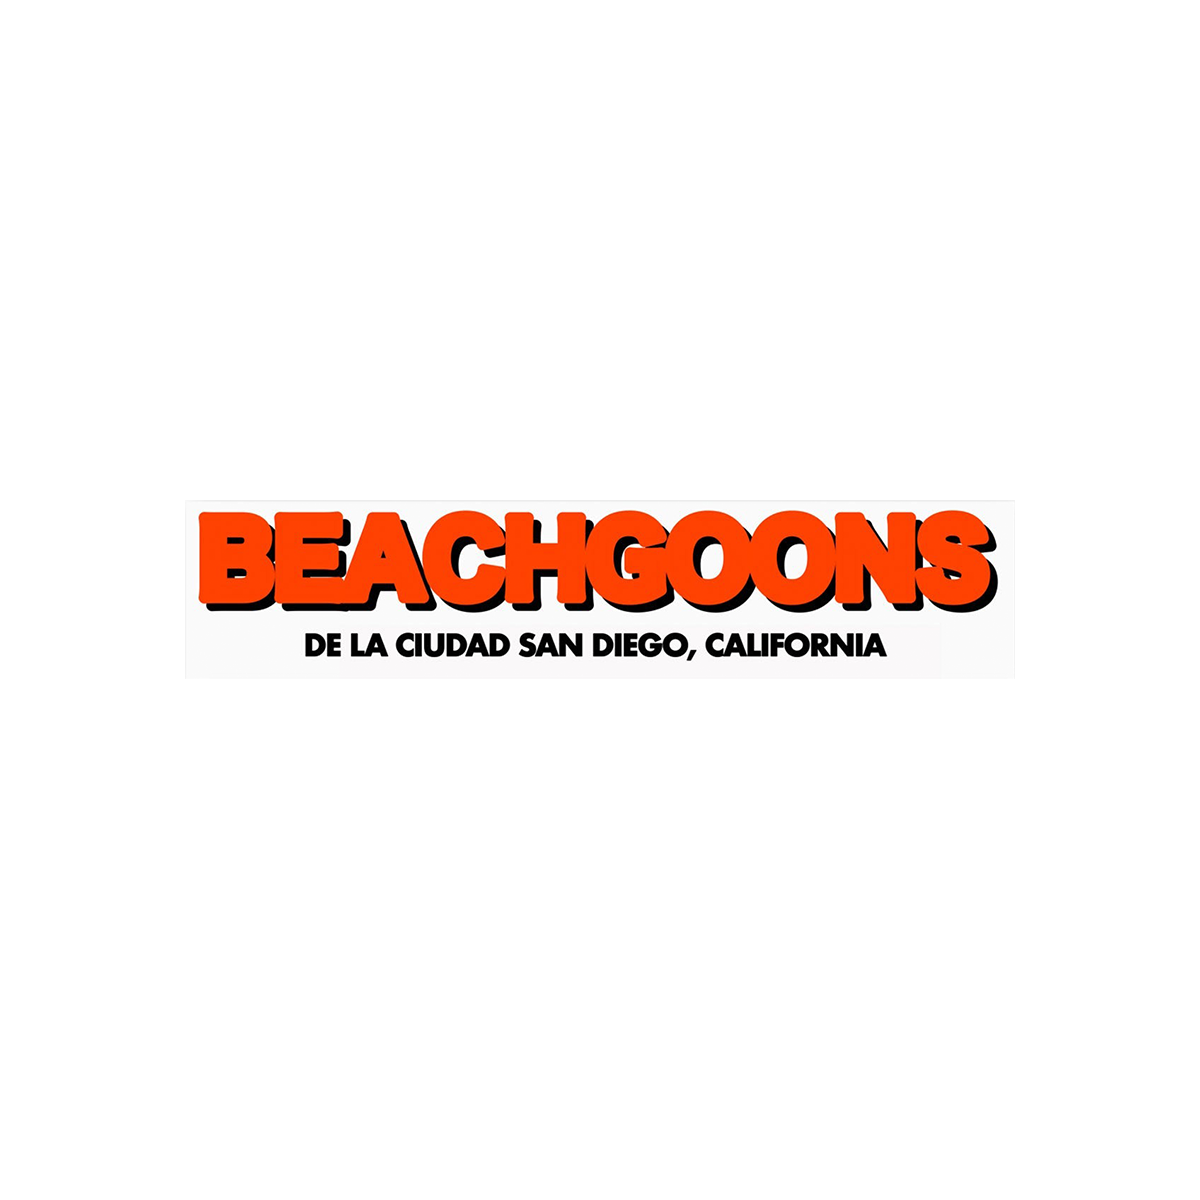 Beach Goons - "De La Cuidad San Diego" Sticker